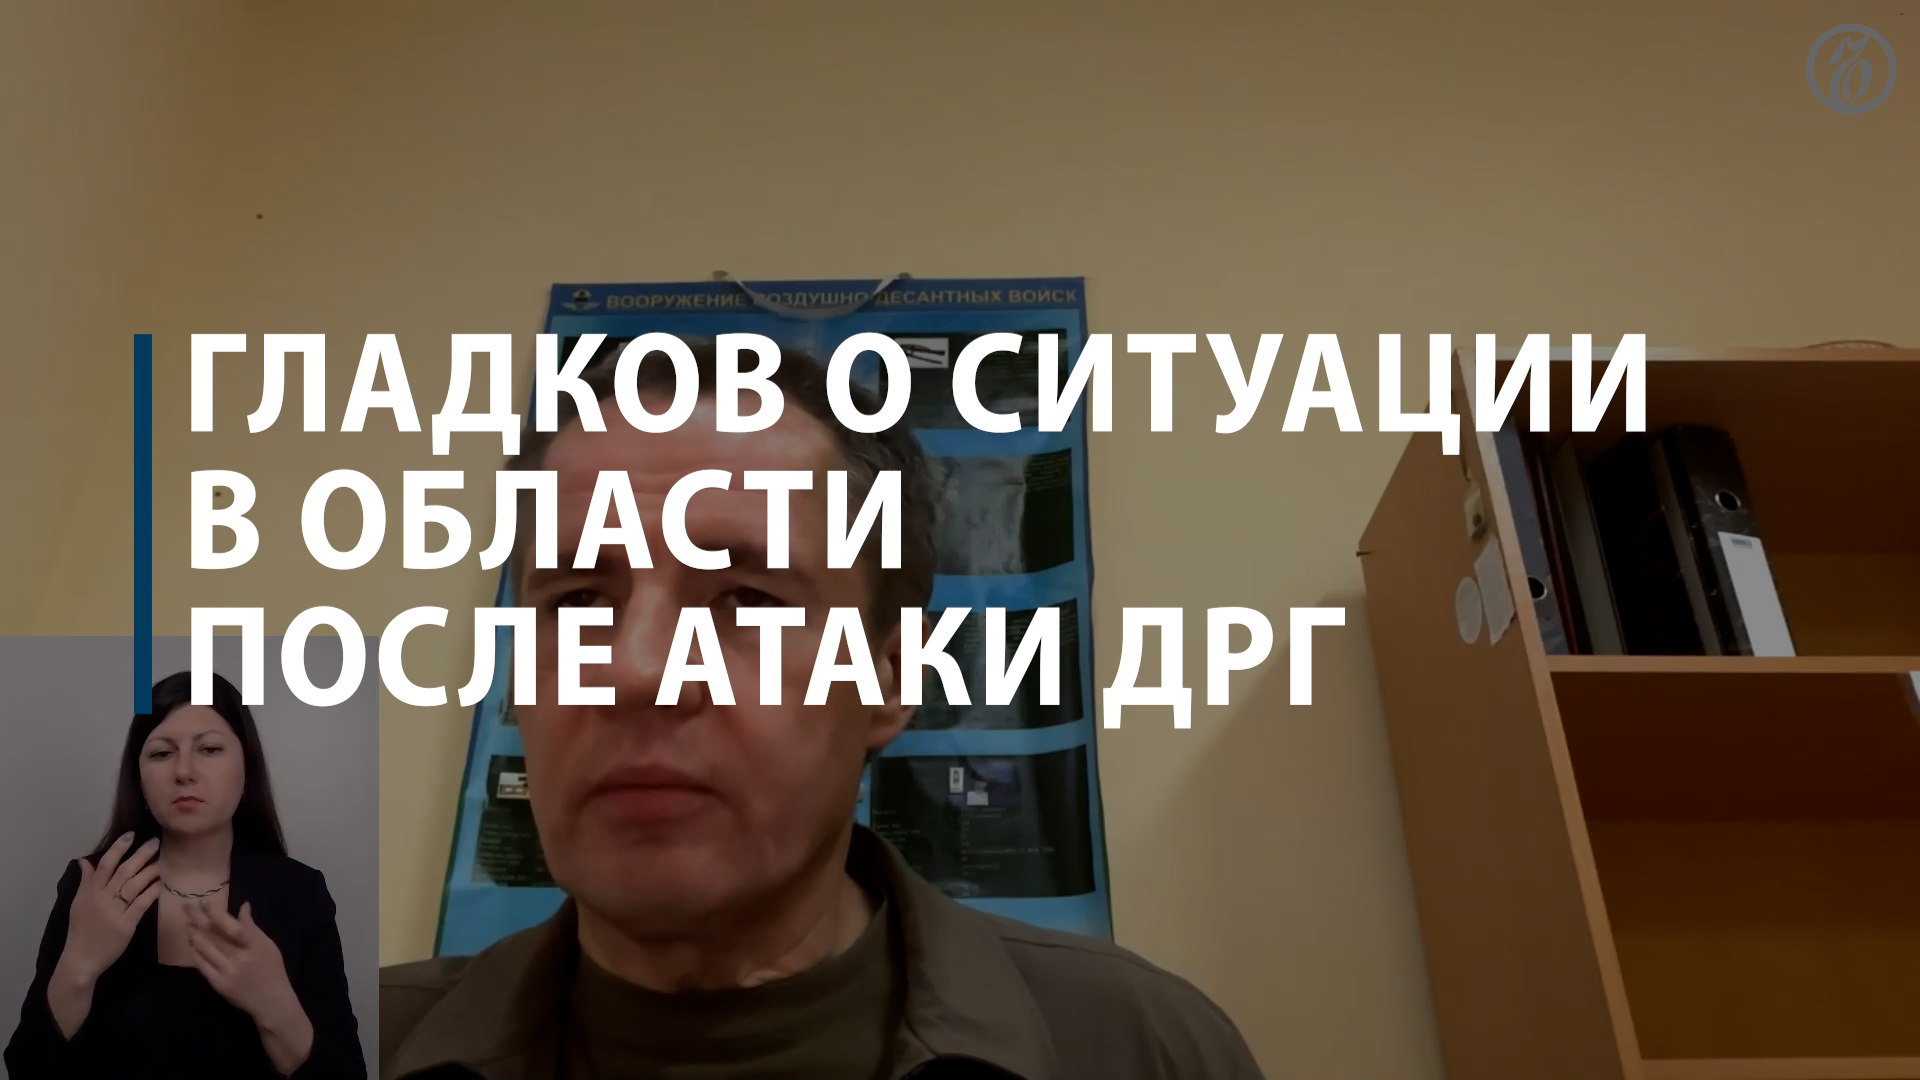 Вячеслав Гладков о текущей ситуации в Белгородской области после атаки ДРГ